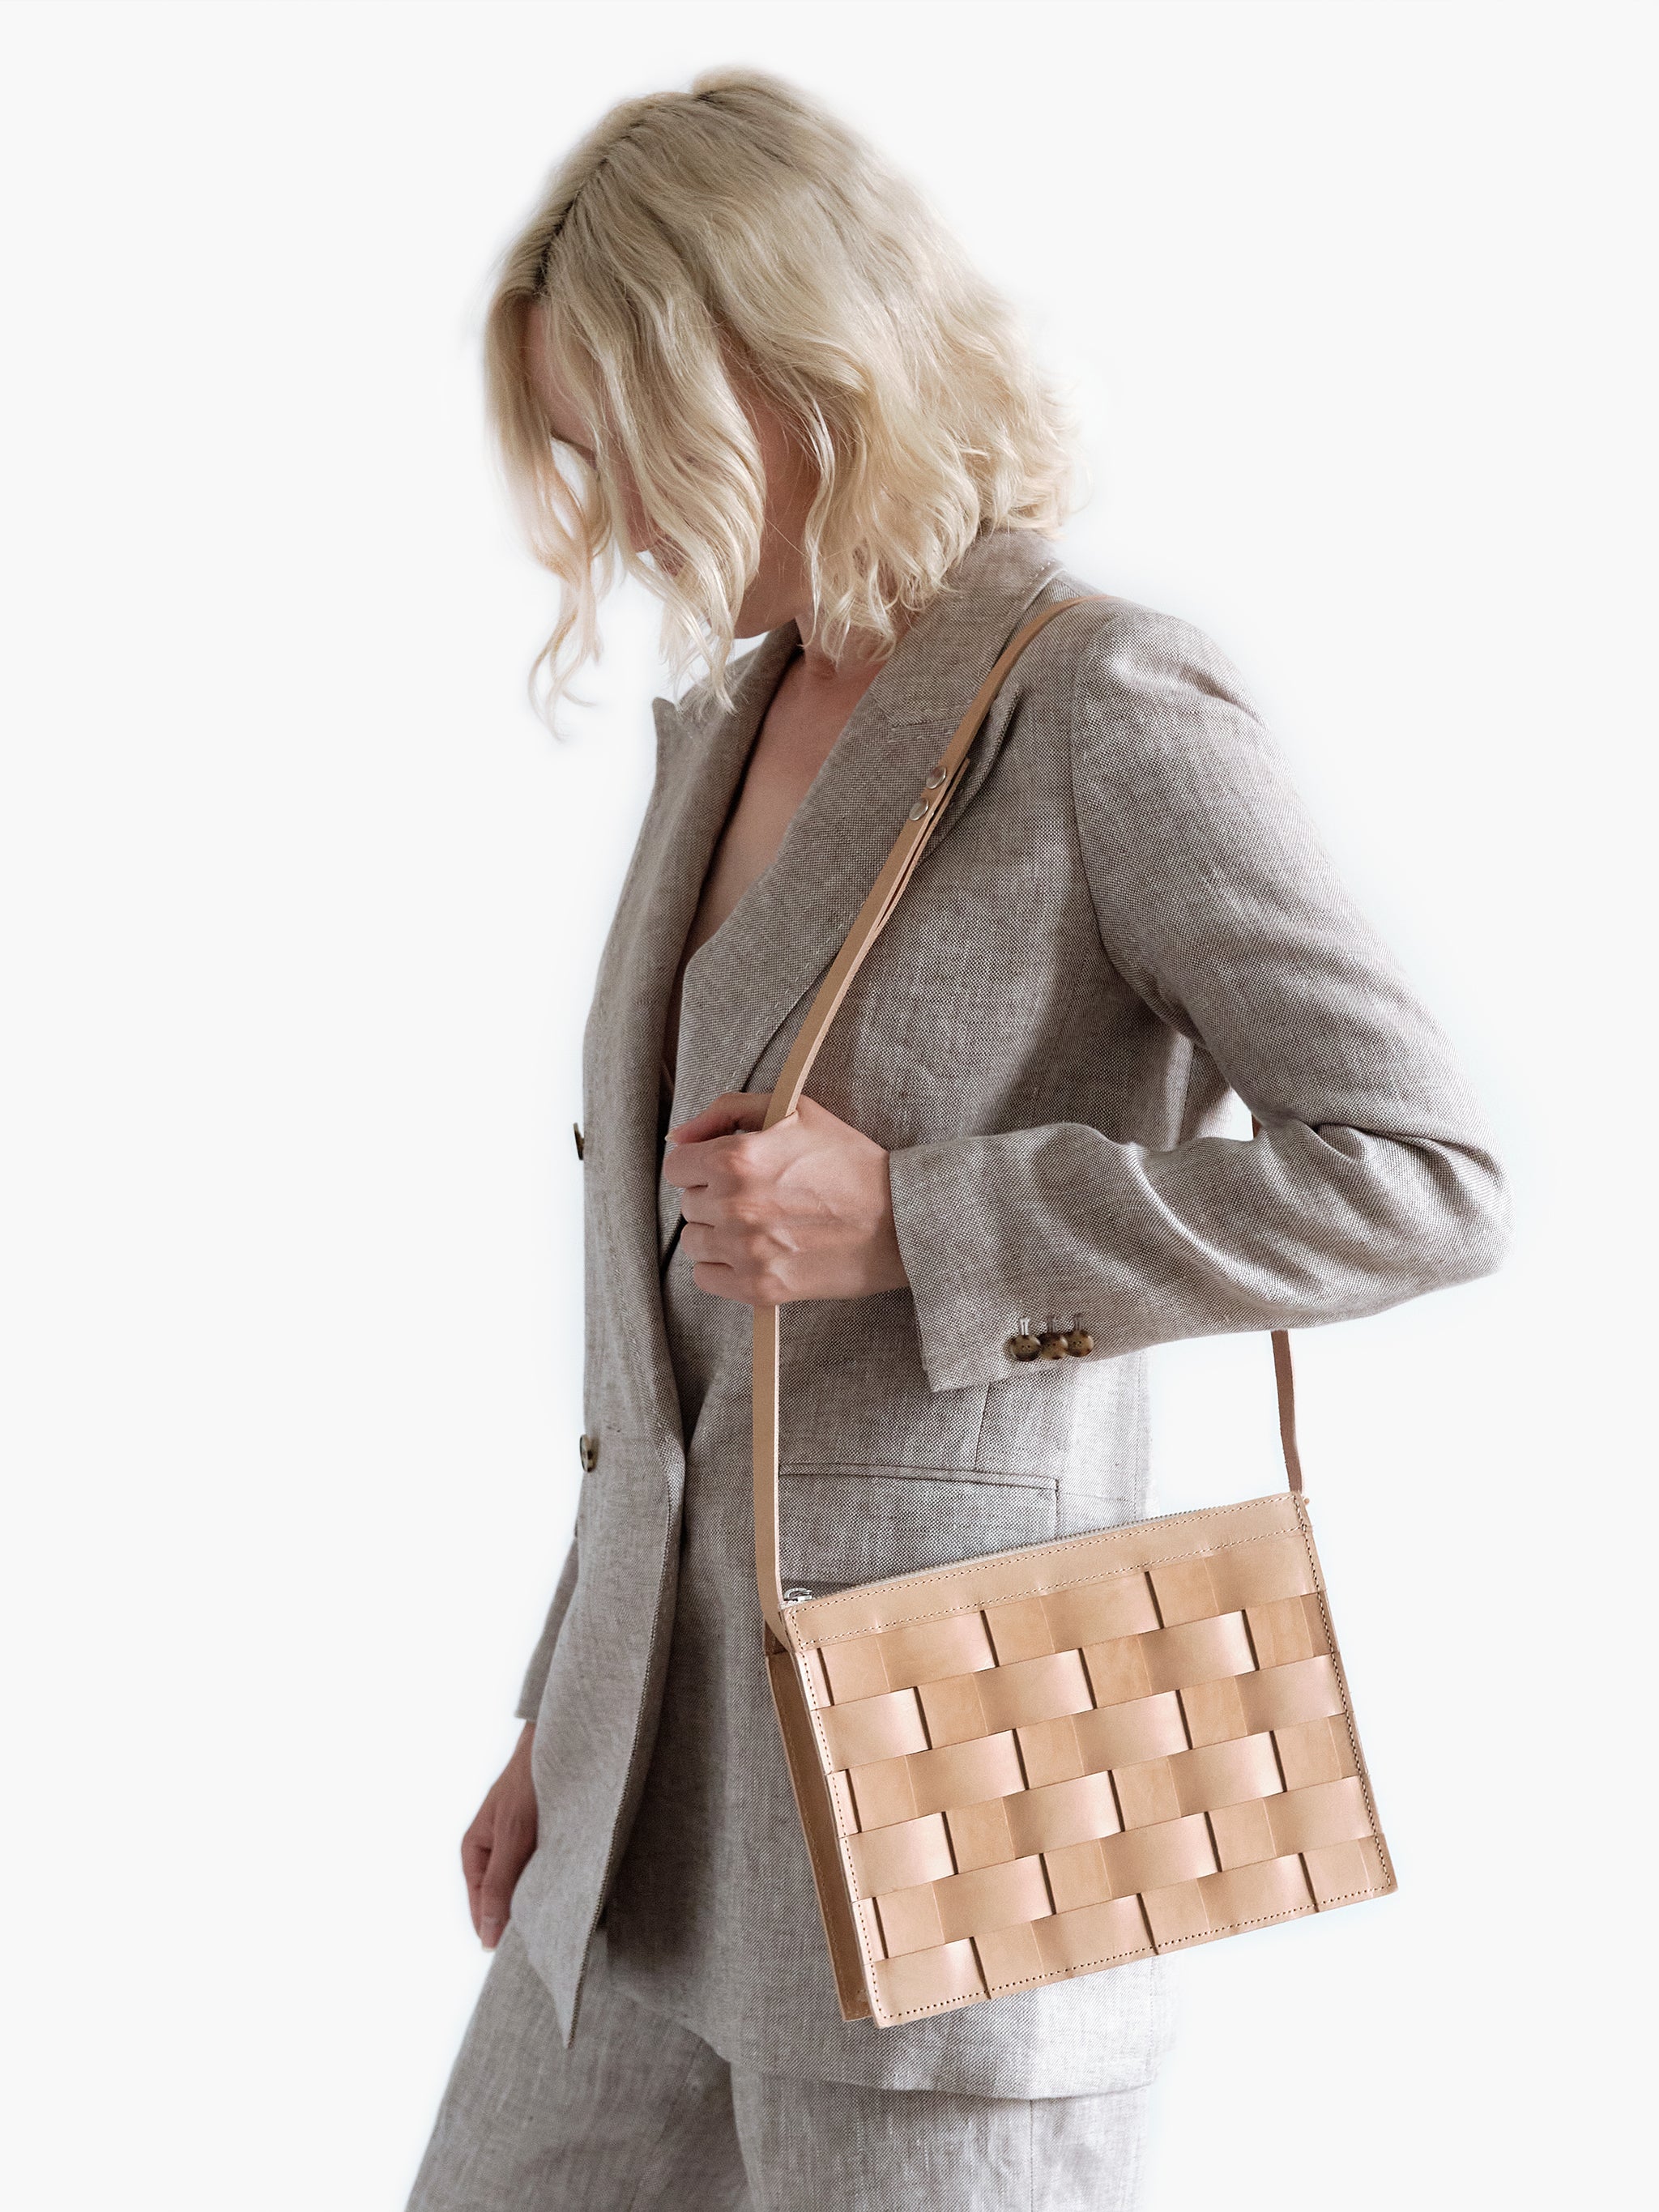 Forskel nåde Bliv sammenfiltret Eduards Accessories - Näver Small Shoulder Bag in Natural Leather – Less Is  Nord